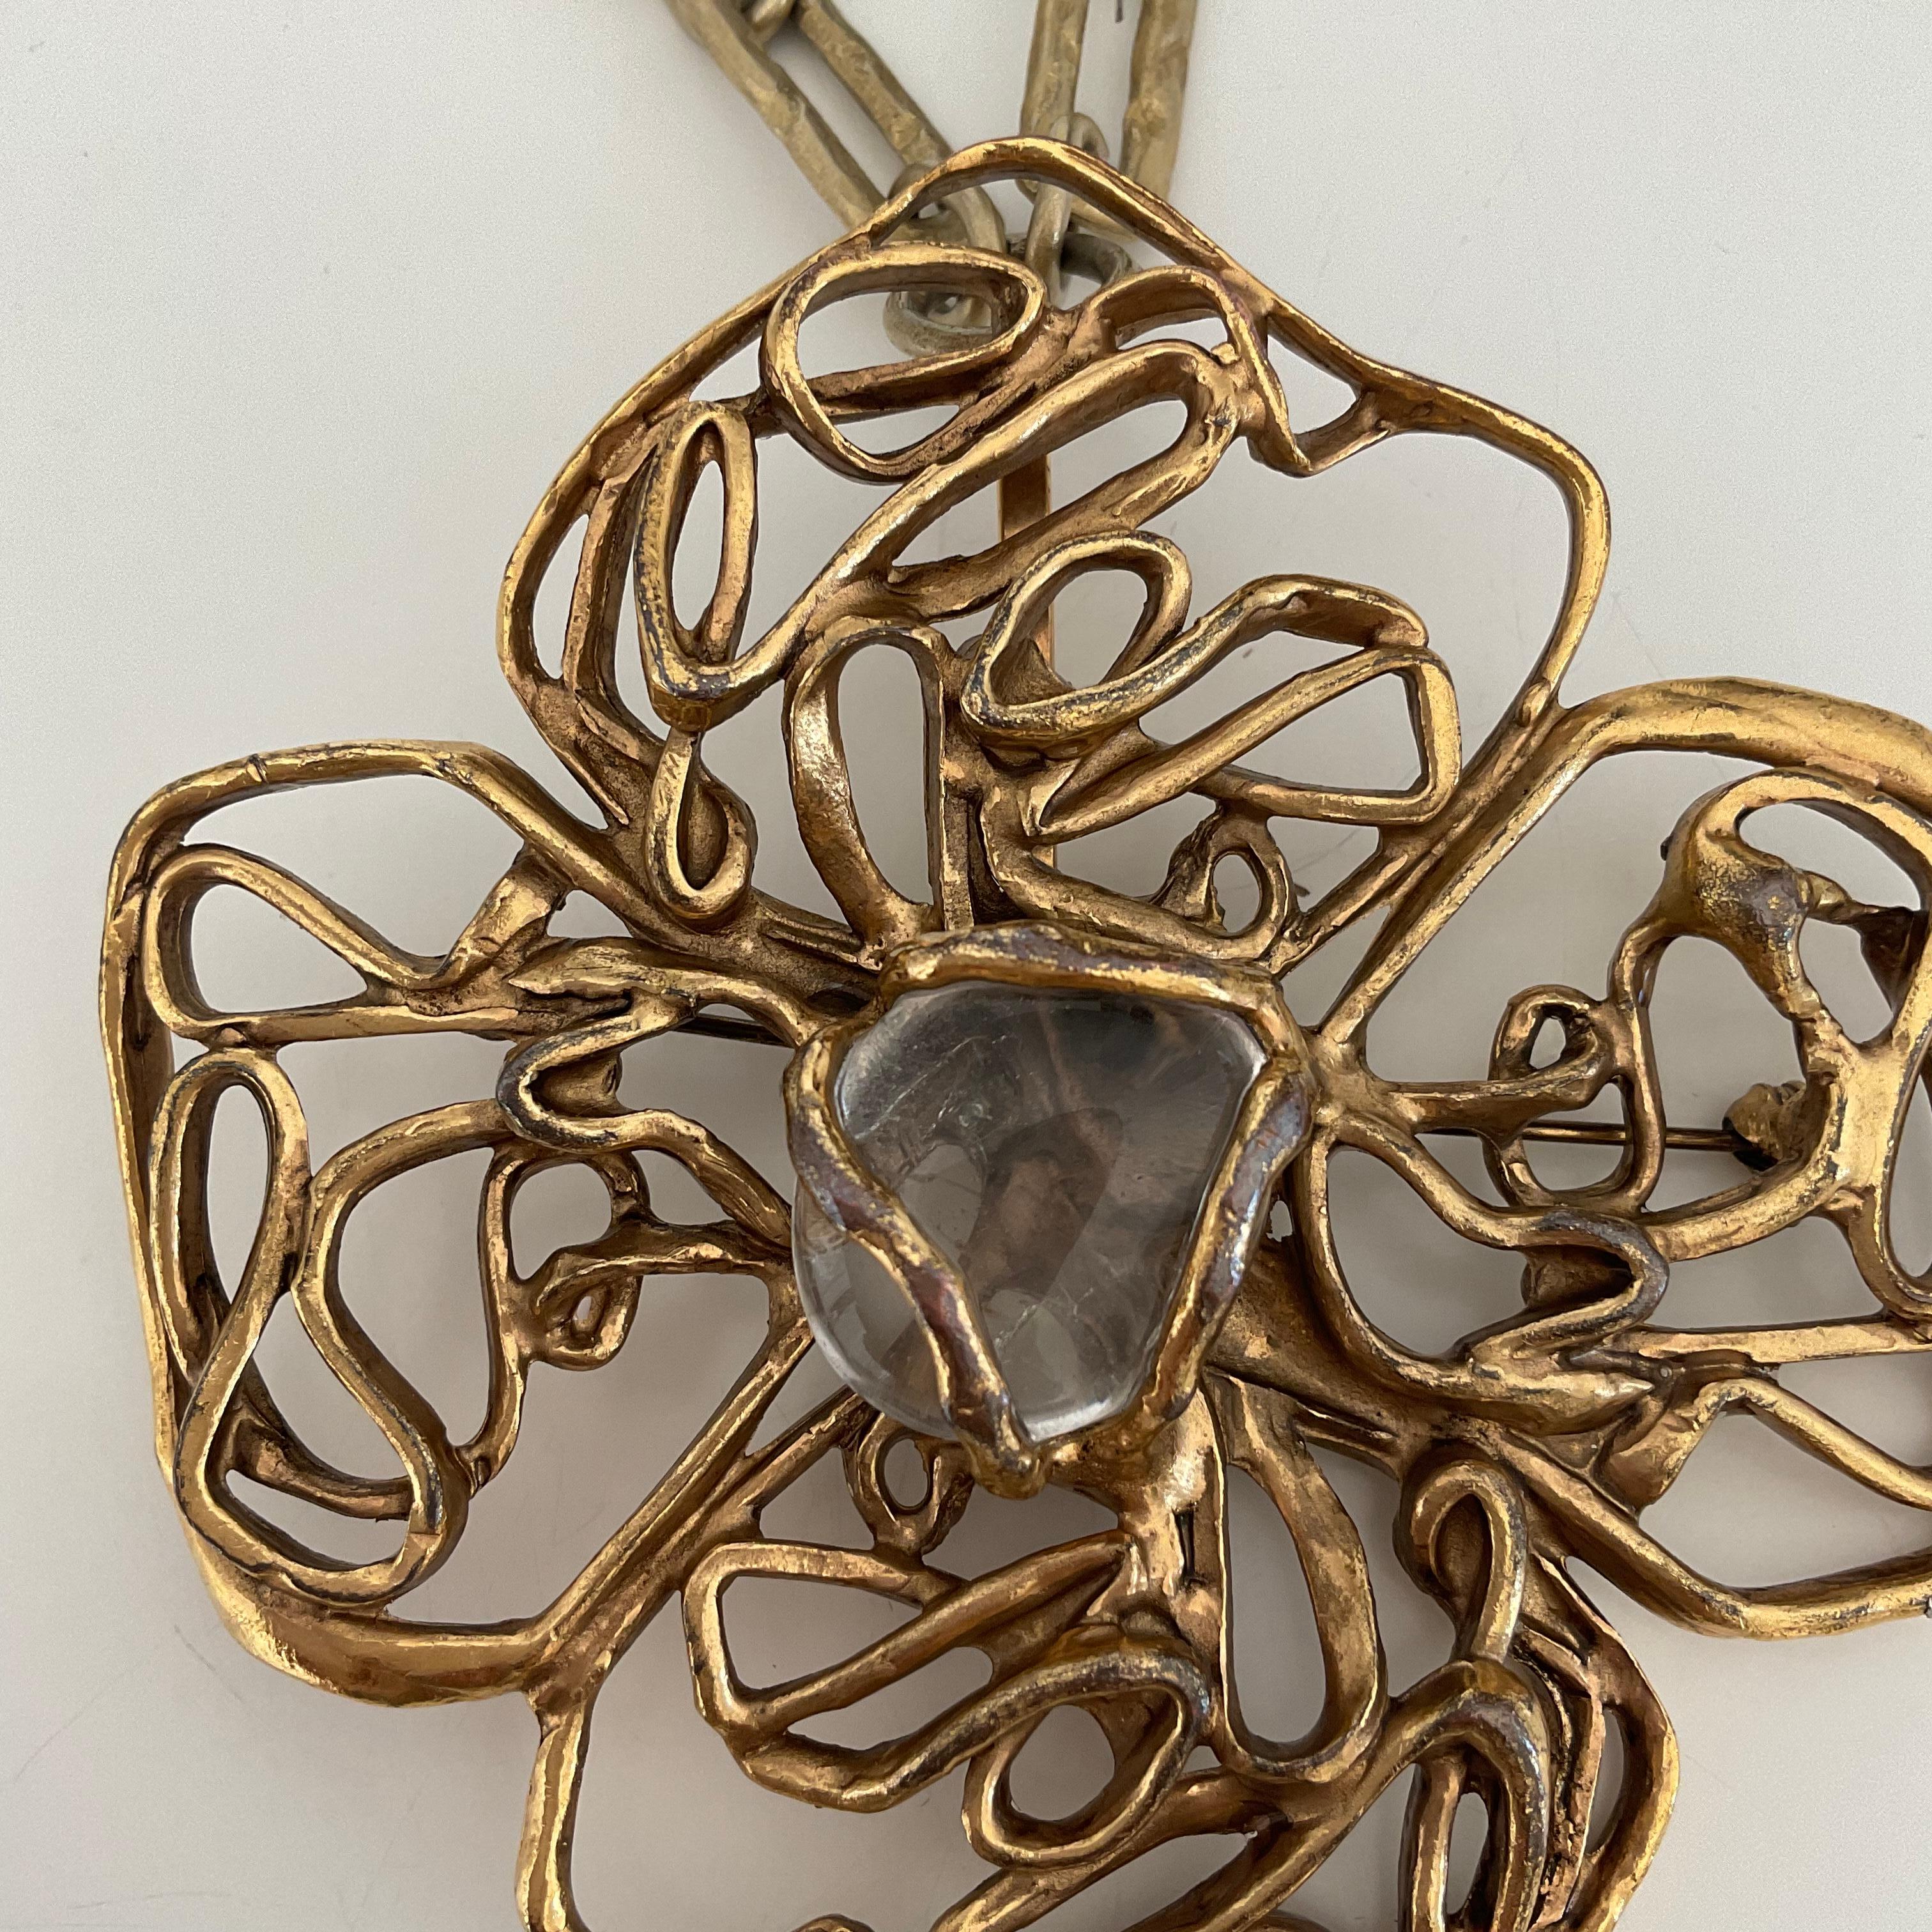 Cette broche originale et unique est une pièce vintage d'Yves Saint Laurent datant des années 70. Doré, il est conçu comme une fleur, composée de quatre pétales avec des chaînes/liens câblés, avec un cristal de roche clair au centre. La broche